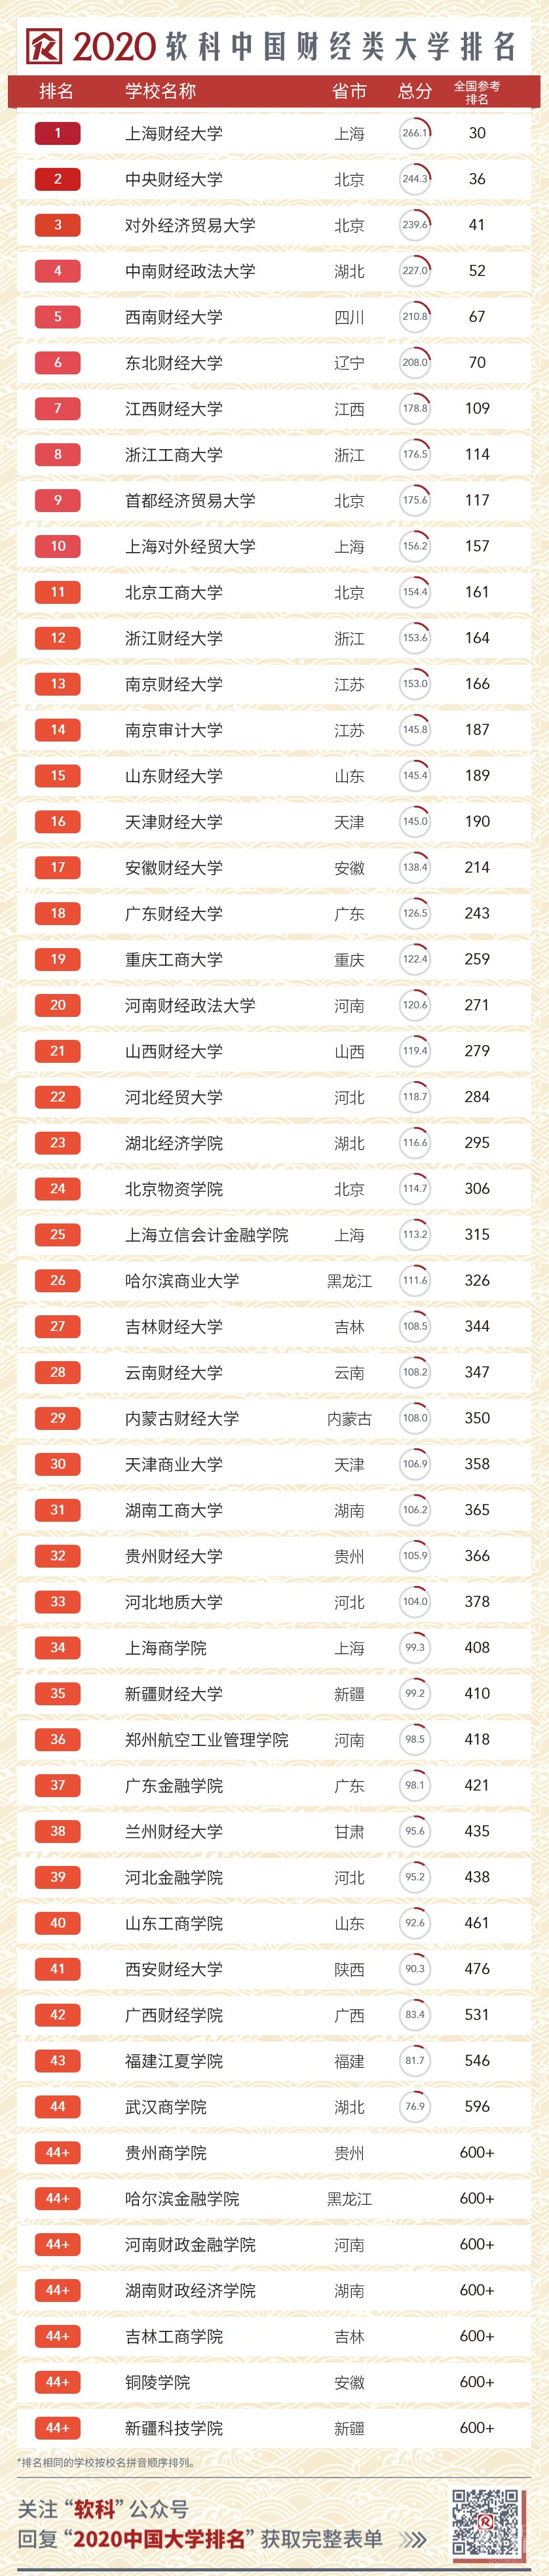 2020软科中国语言类大学排名的上榜高校有  所,北京外国语大学,中国